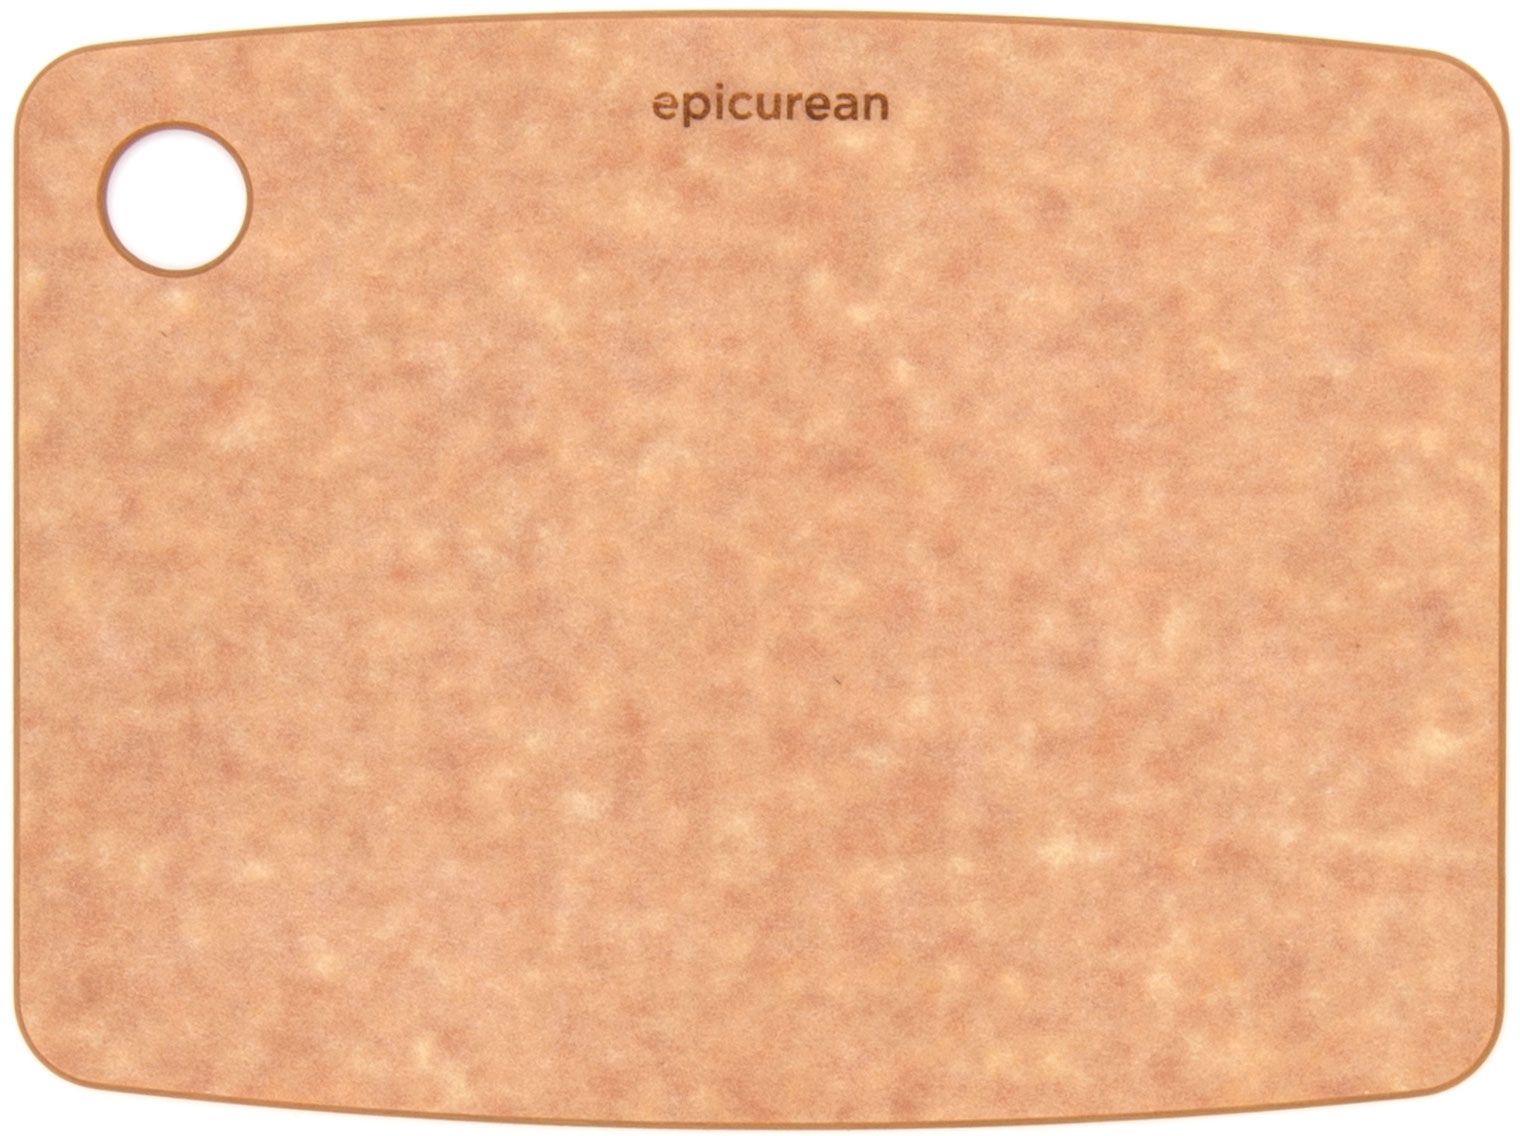 Epicurean Kitchen Series Wood Fiber Cutting Board, Natural, 8 inch x 6 inch